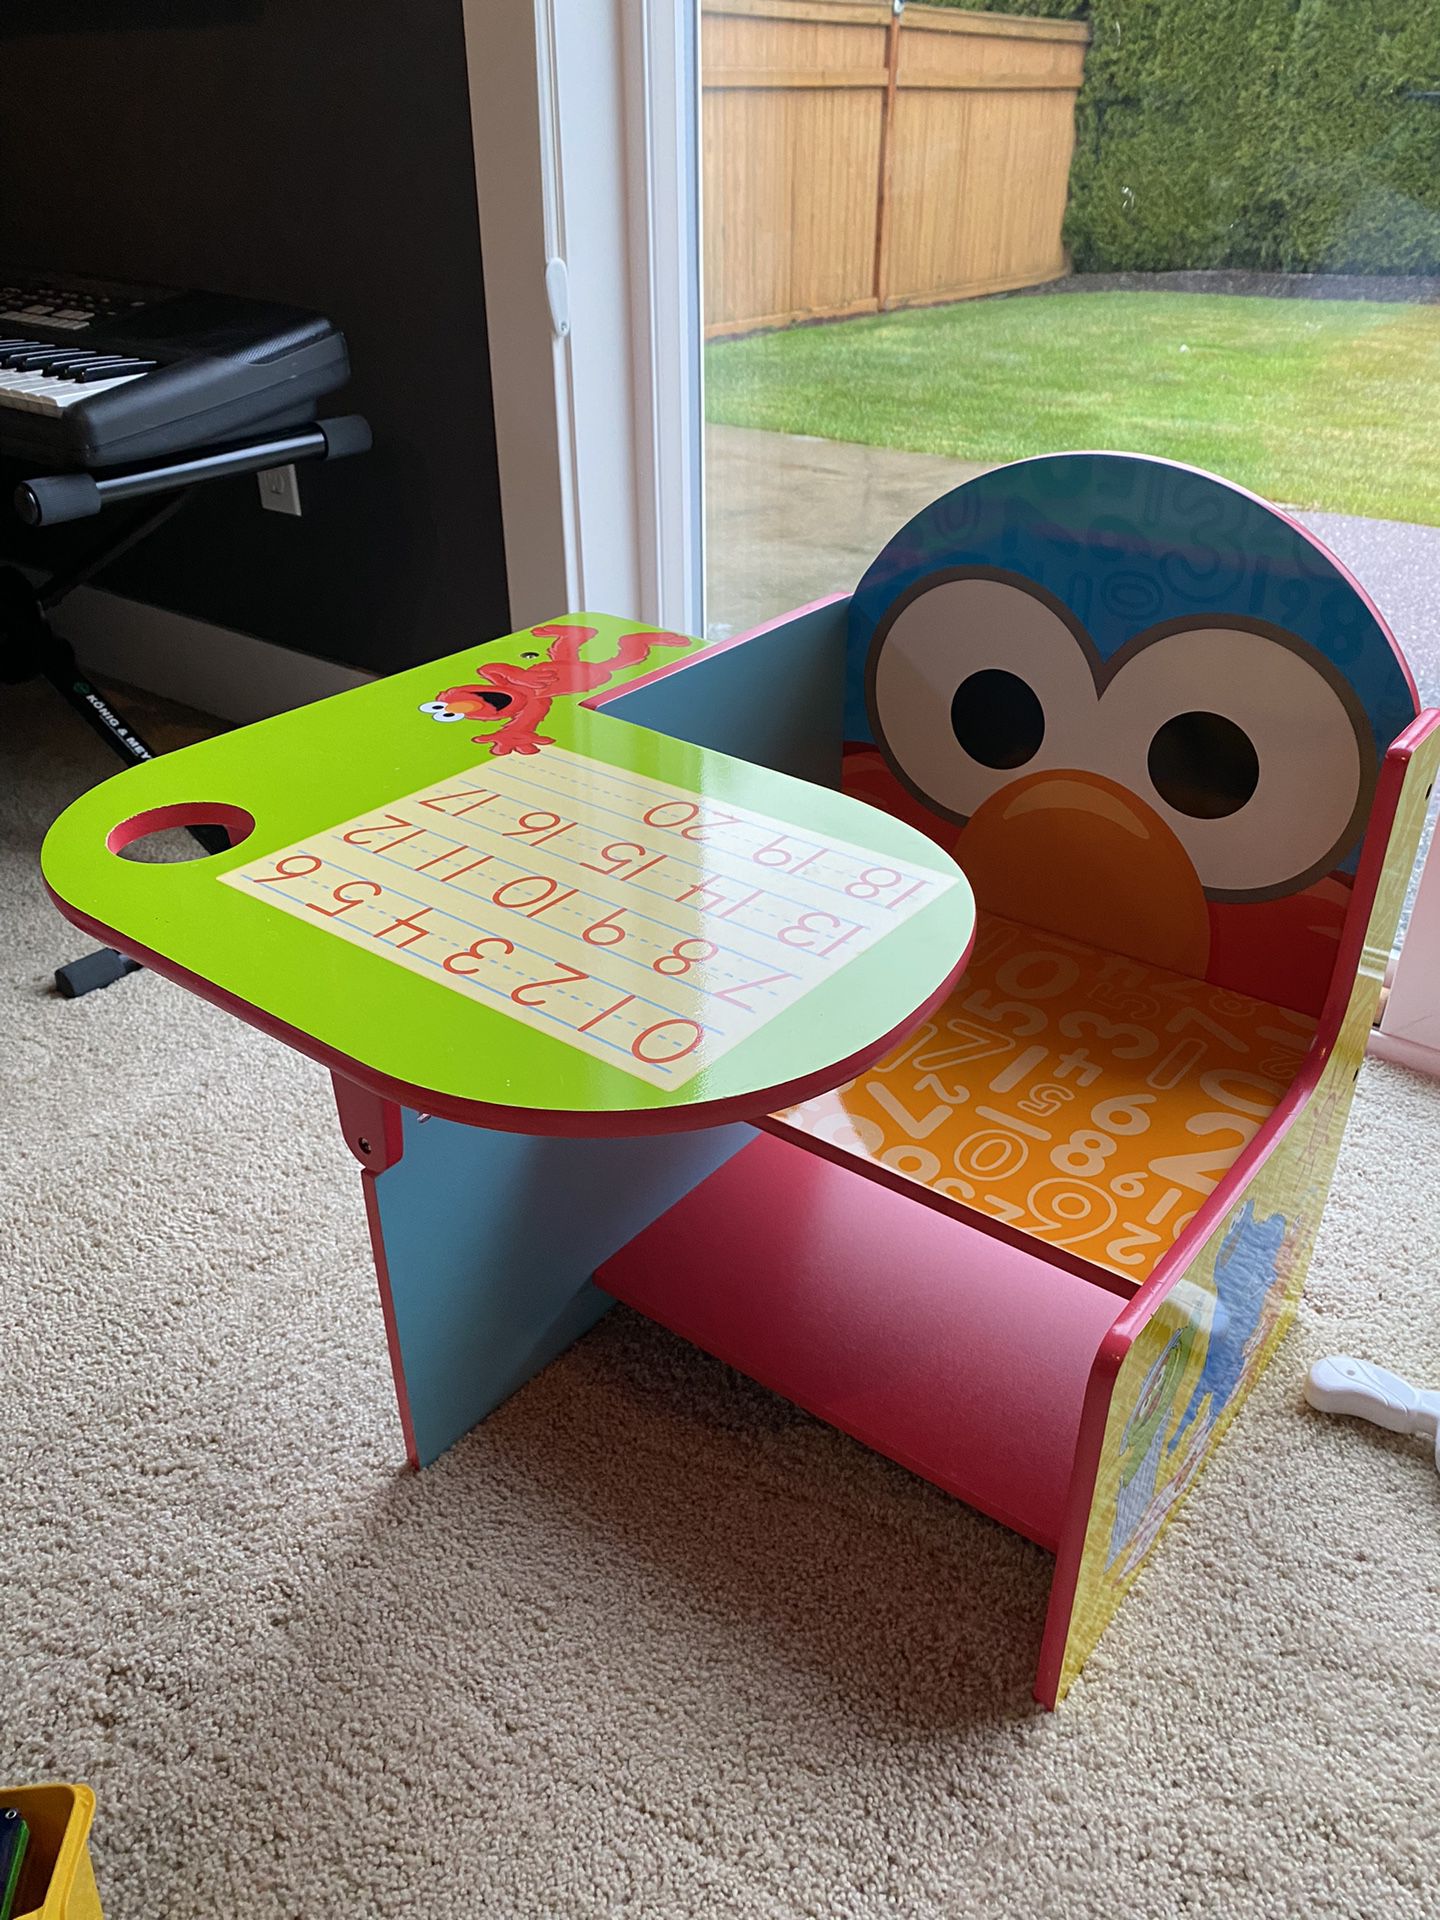 Sesame Street Elmo Chair Desk With Storage Bin For Toddlers - Delta Children